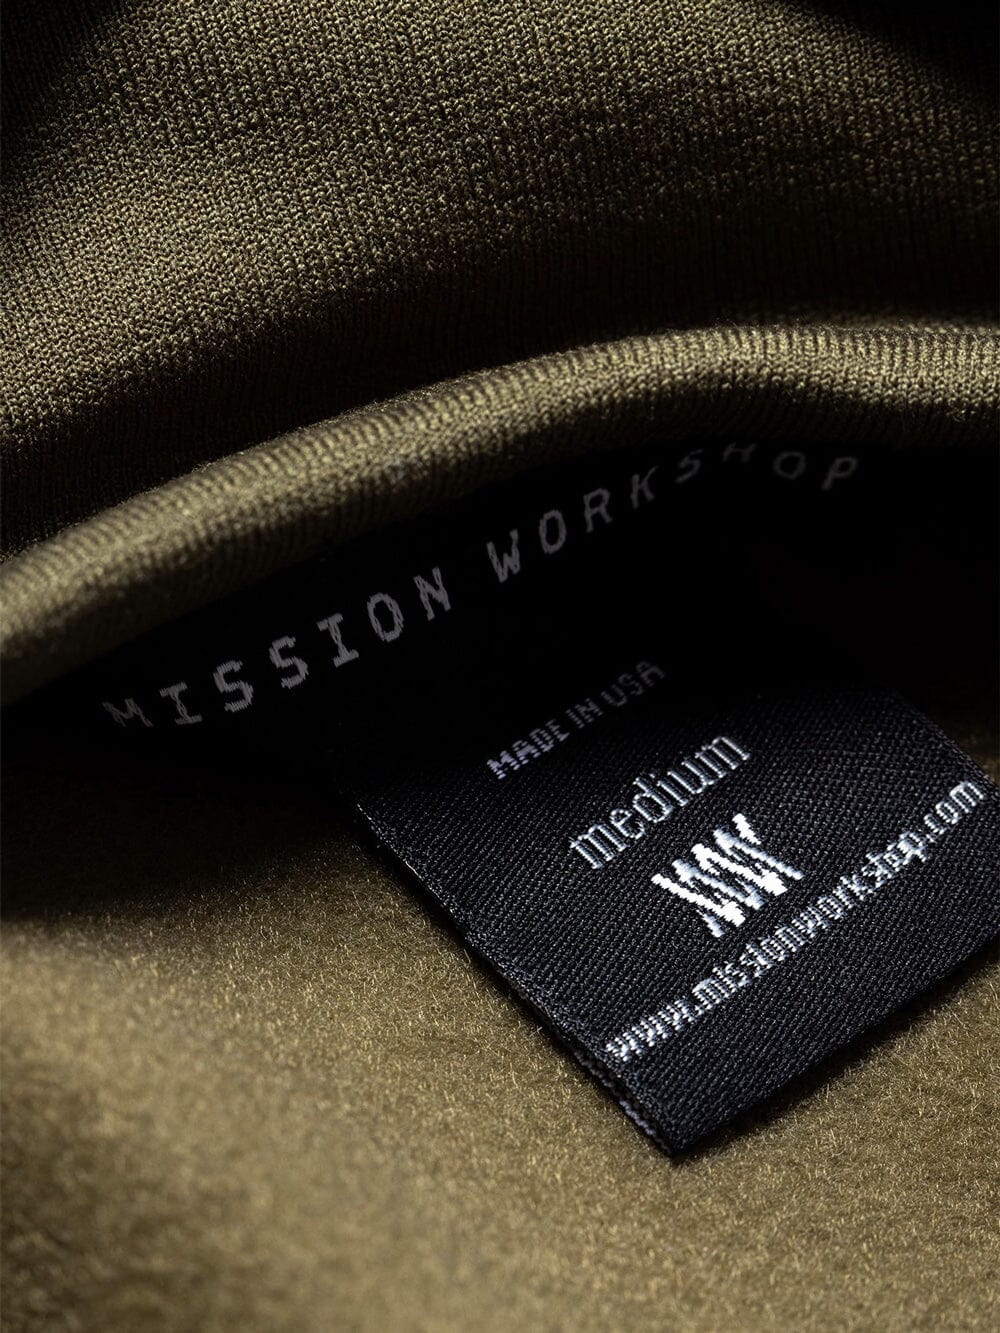 Mason : Power Stretch Pro by Mission Workshop - Säänkestävät laukut ja tekniset vaatteet - San Francisco & Los Angeles - Rakennettu kestämään - ikuinen takuu